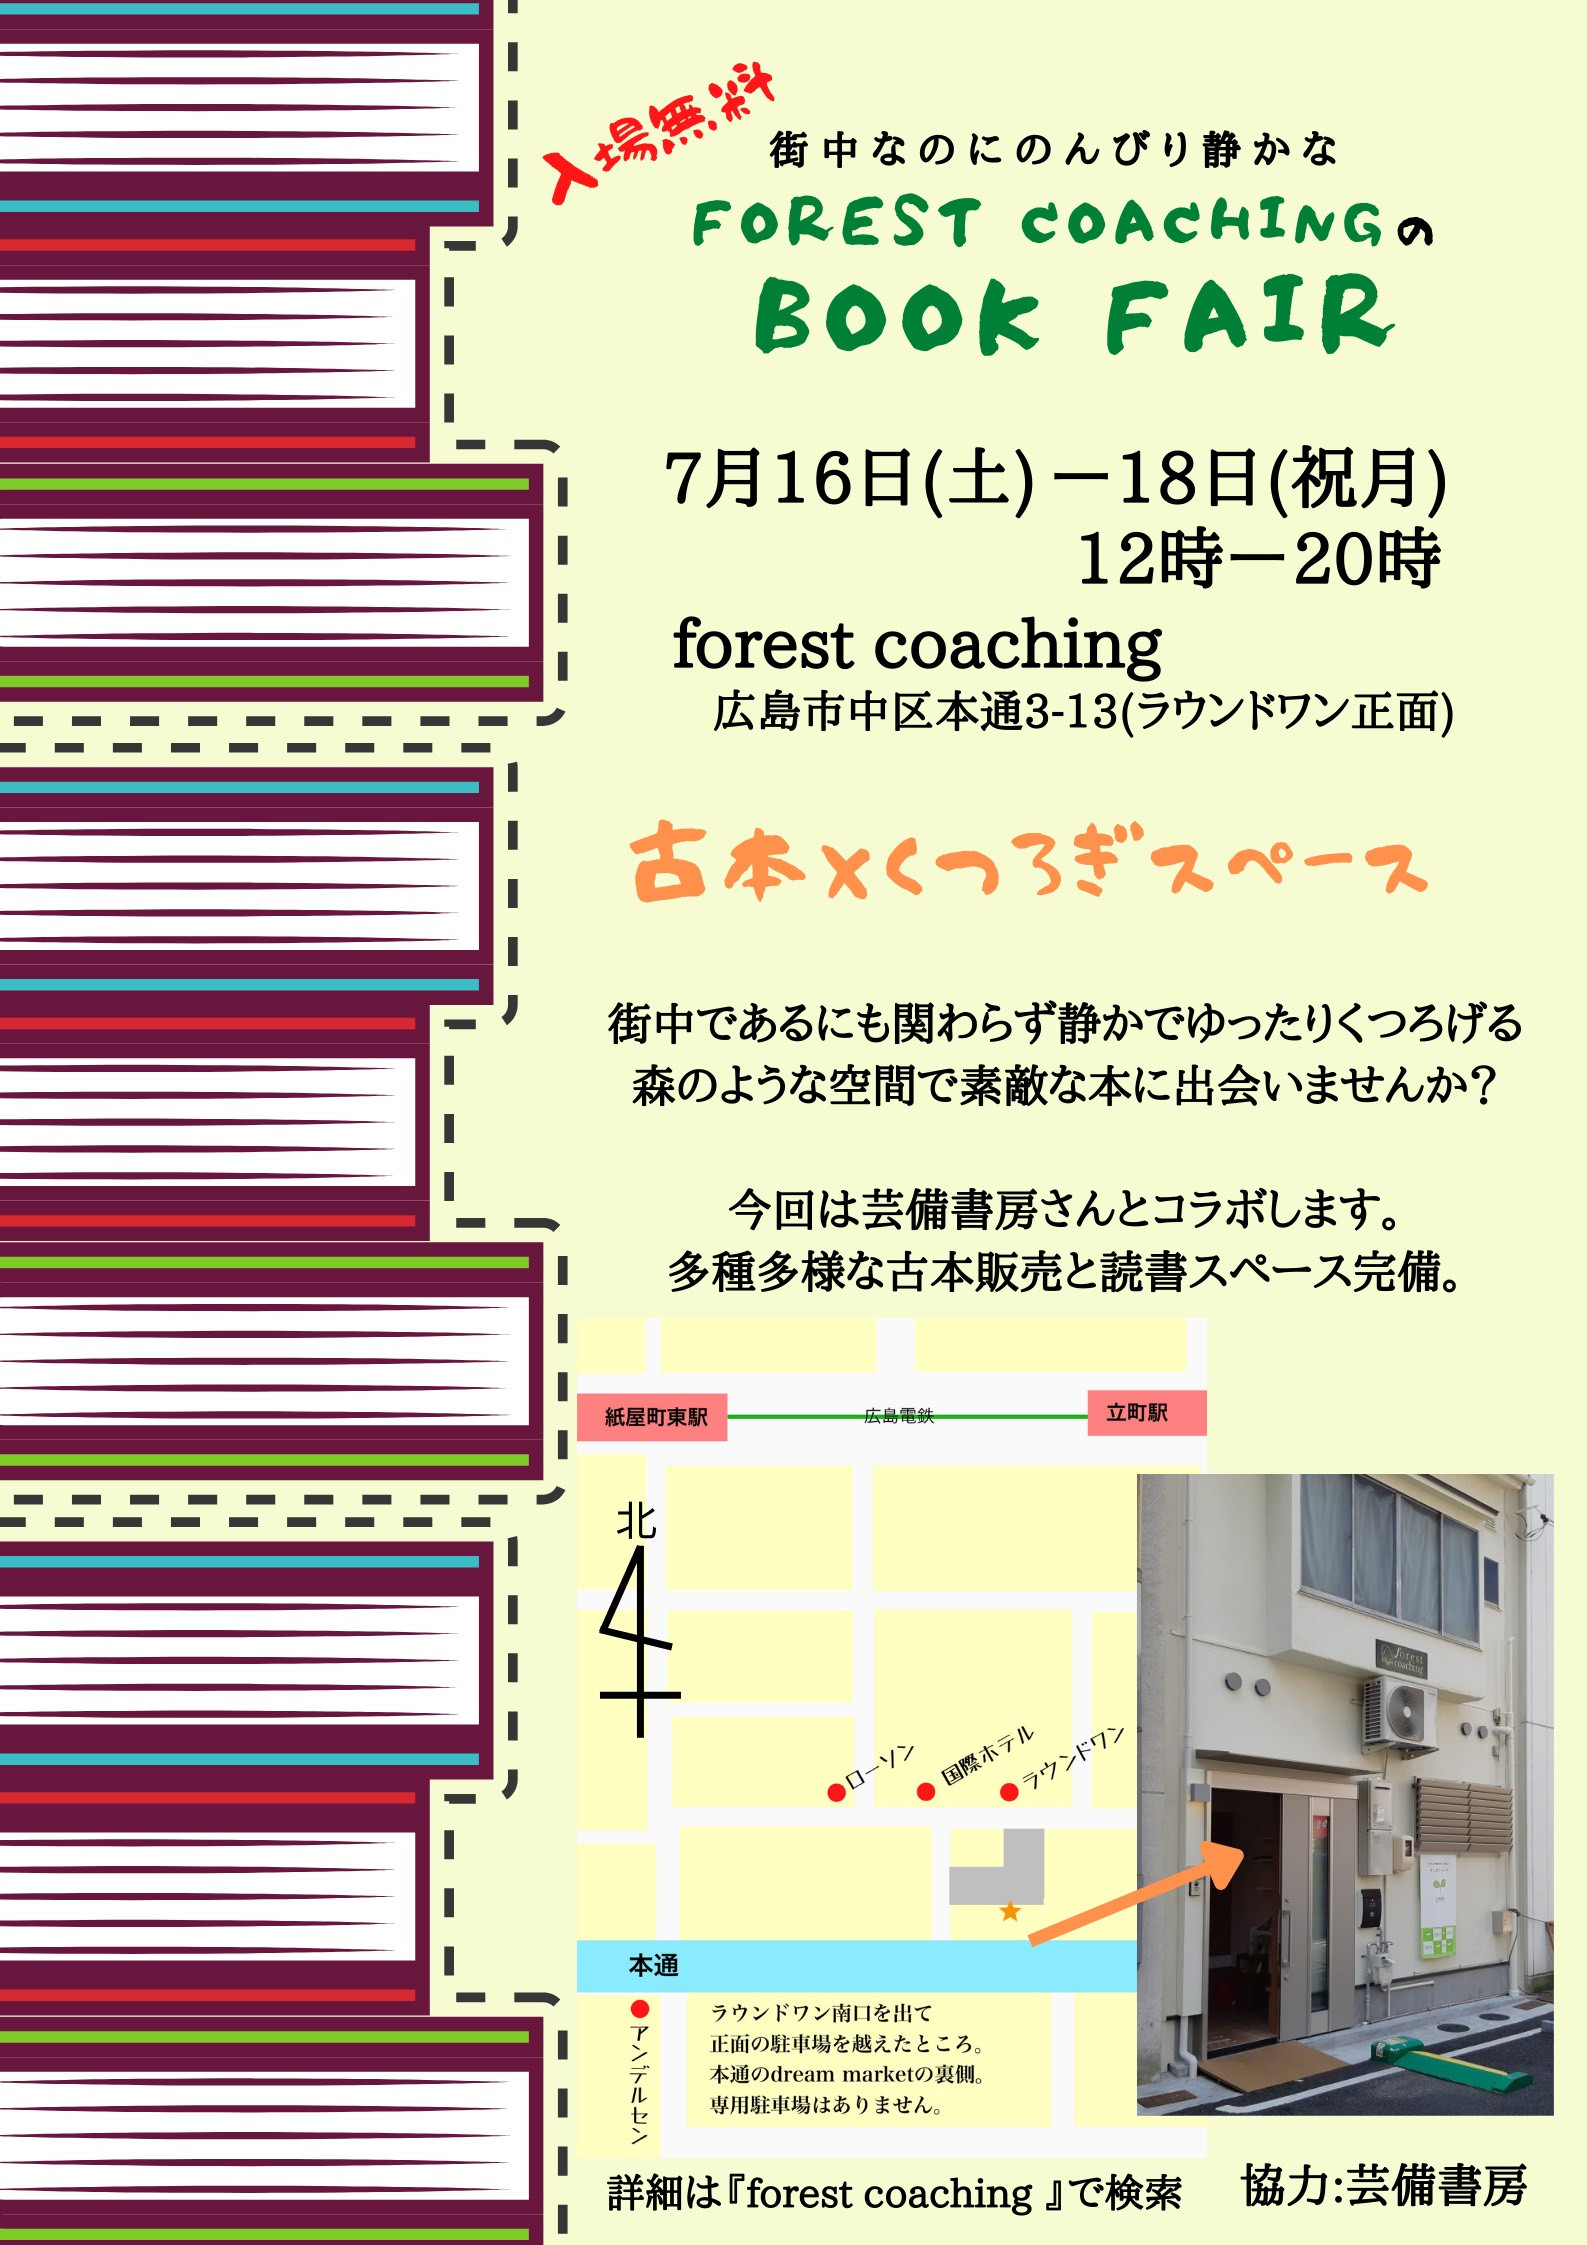 広島本通  Forest coaching で開催されるBOOK FAIR に出店します。